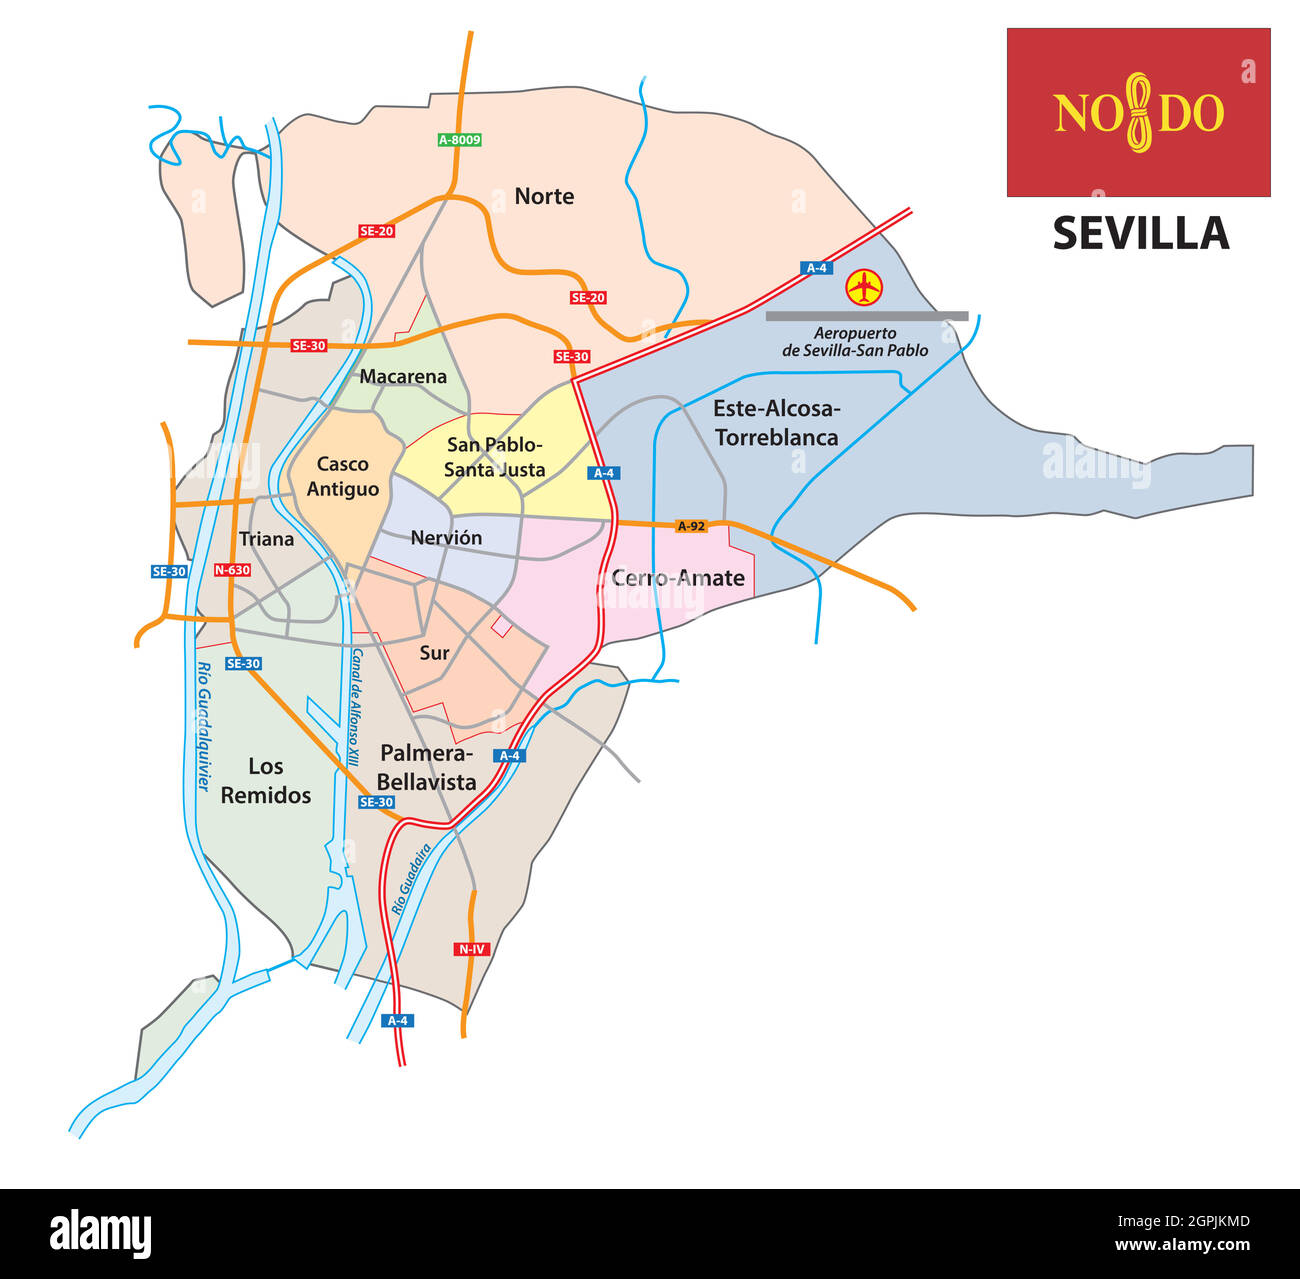 Mappa amministrativa e stradale della capitale andalusa Siviglia, Spagna Illustrazione Vettoriale